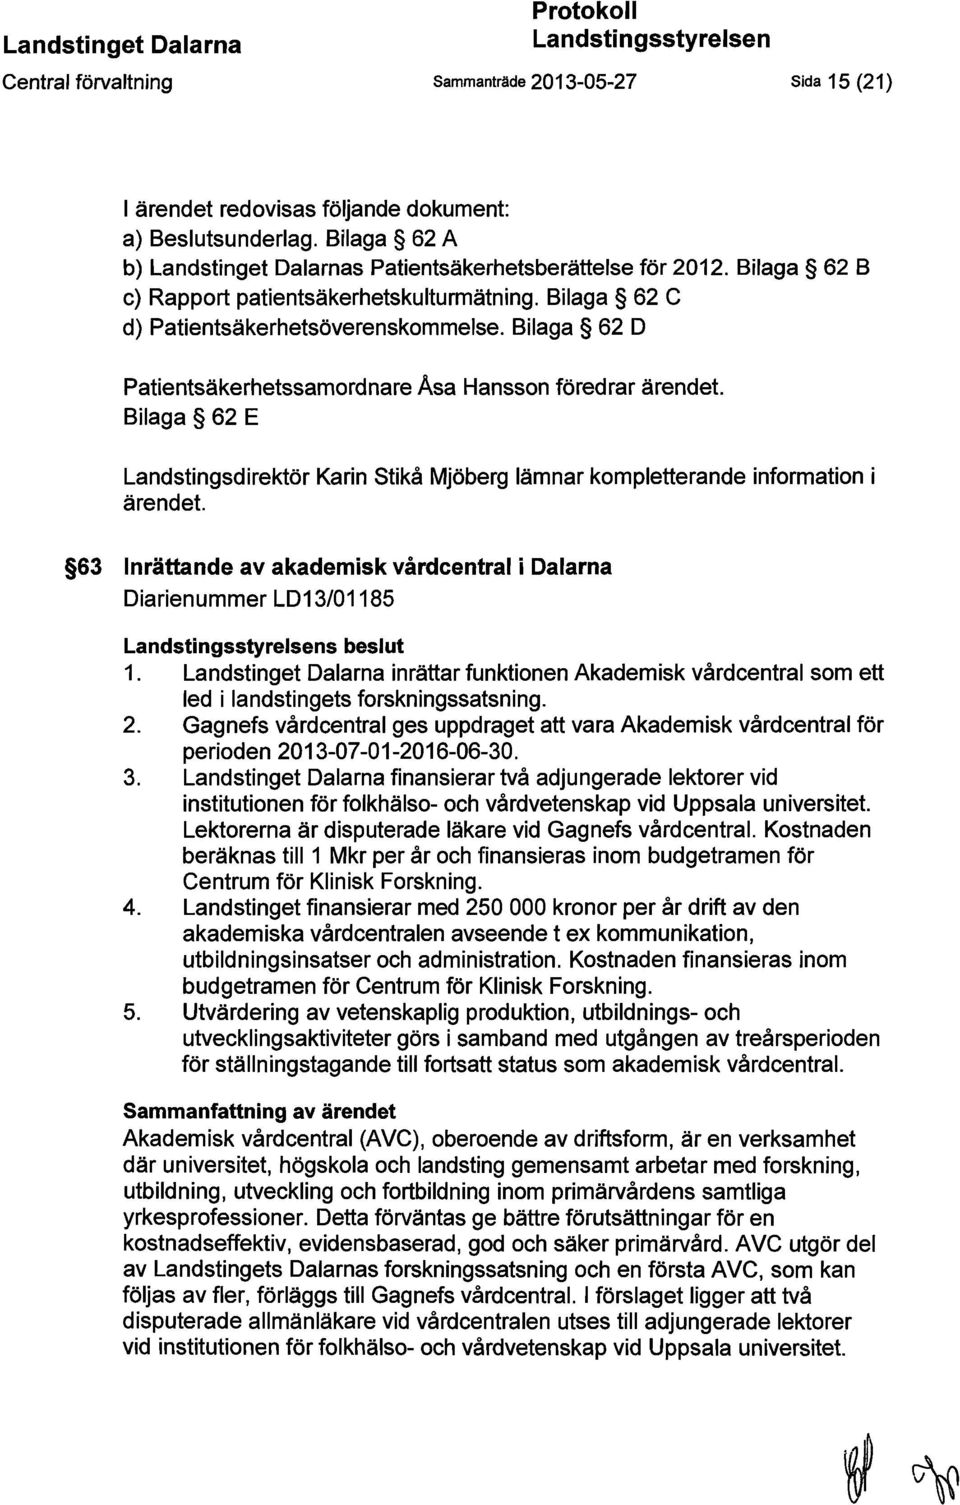 Bilaga 62 D Patientsäkerhetssamordnare Asa Hansson föredrar ärendet. Bilaga 62 E Landstingsdirektör Karin Stikå Mjöberg lämnar kompletterande information i ärendet.